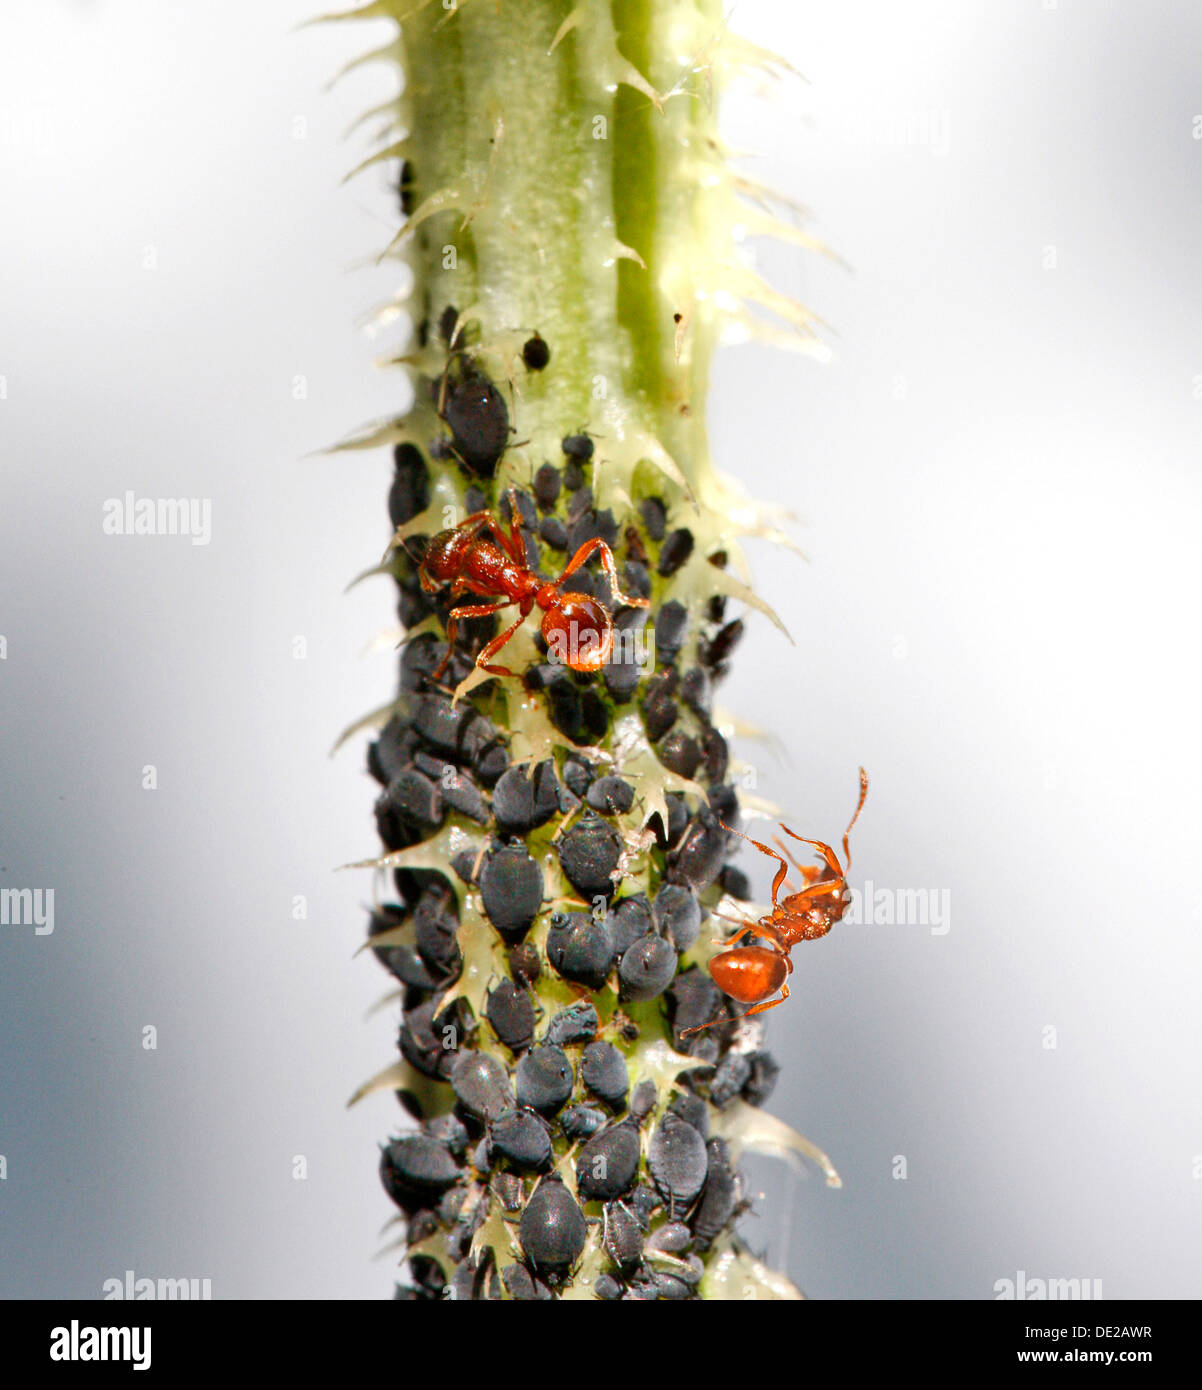 Blattläuse oder Pflanze Läuse (Aphidoidea) auf einer Distel gemolken durch Ameisen (Formidicae), München, Upper Bavaria, Bavaria, Germany Stockfoto